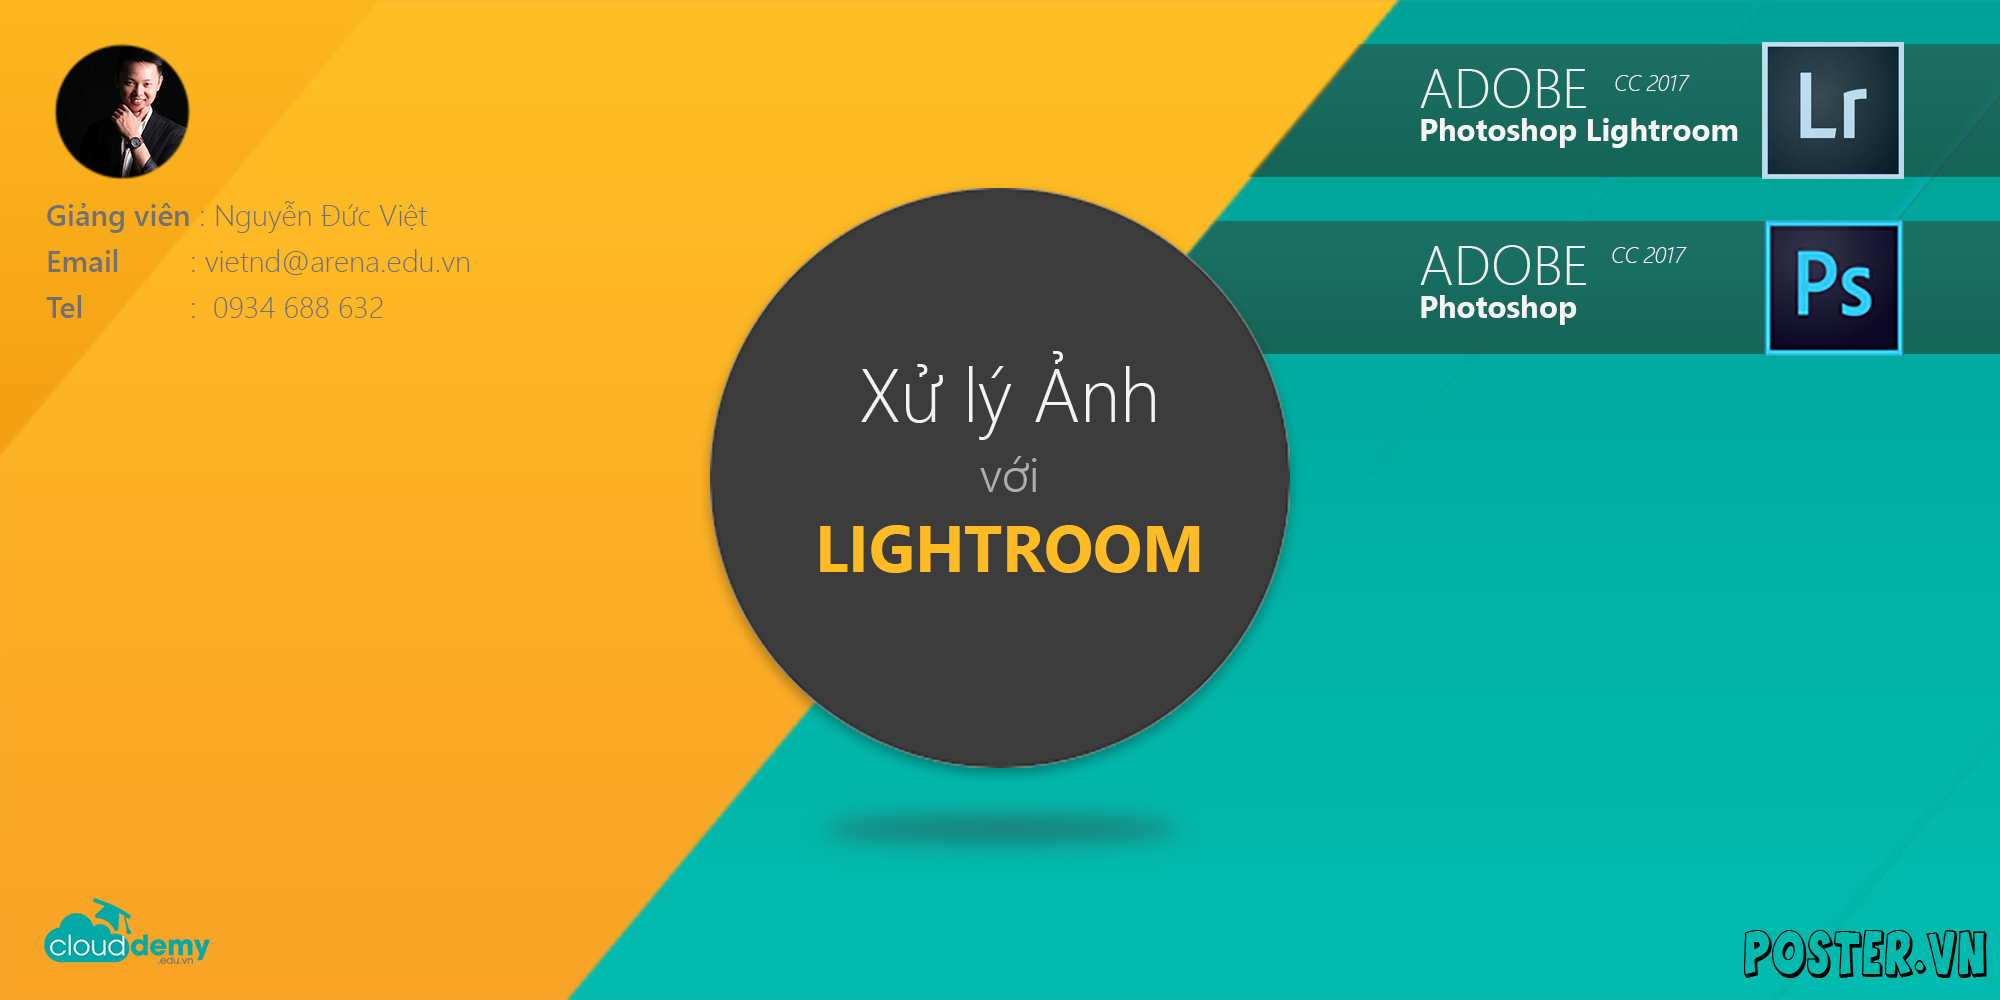 Ct02 – Học‌ ‌chỉnh‌ ‌sửa‌ ‌ảnh‌ ‌chuyên‌ ‌nghiệp‌ ‌bằng‌ ‌Adobe‌ ‌PTS LightRoom‌